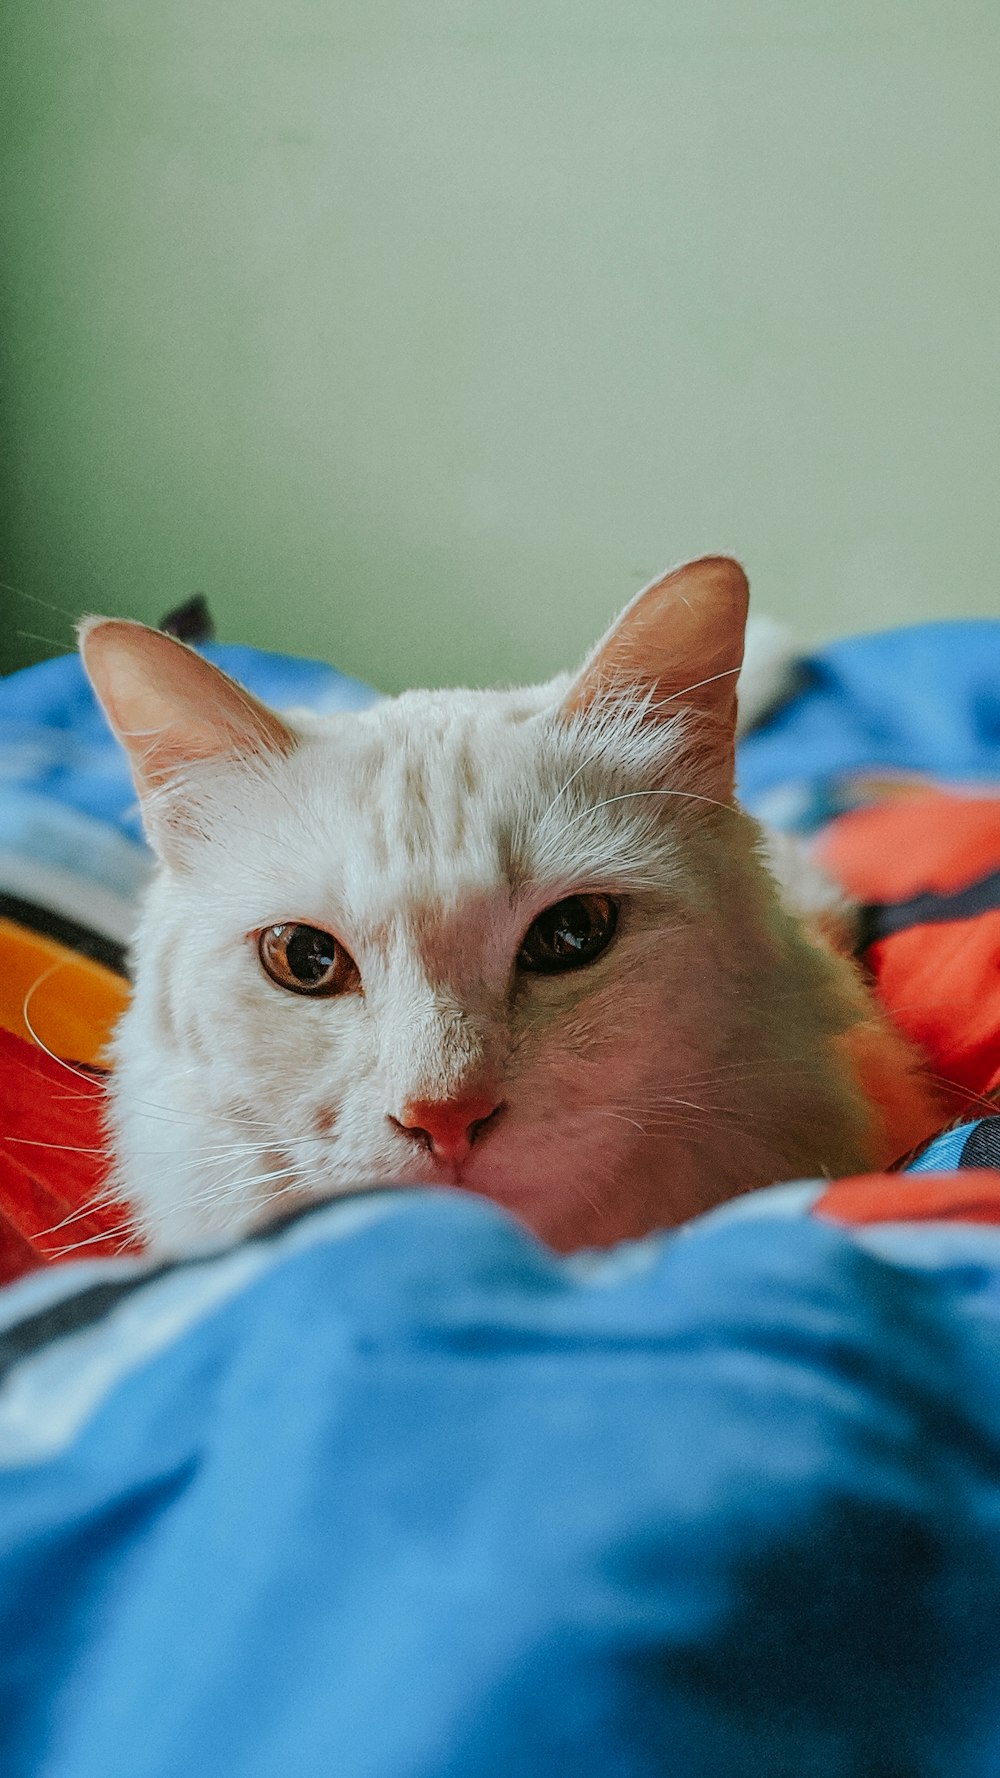 chat blanc couché sur un textile bleu